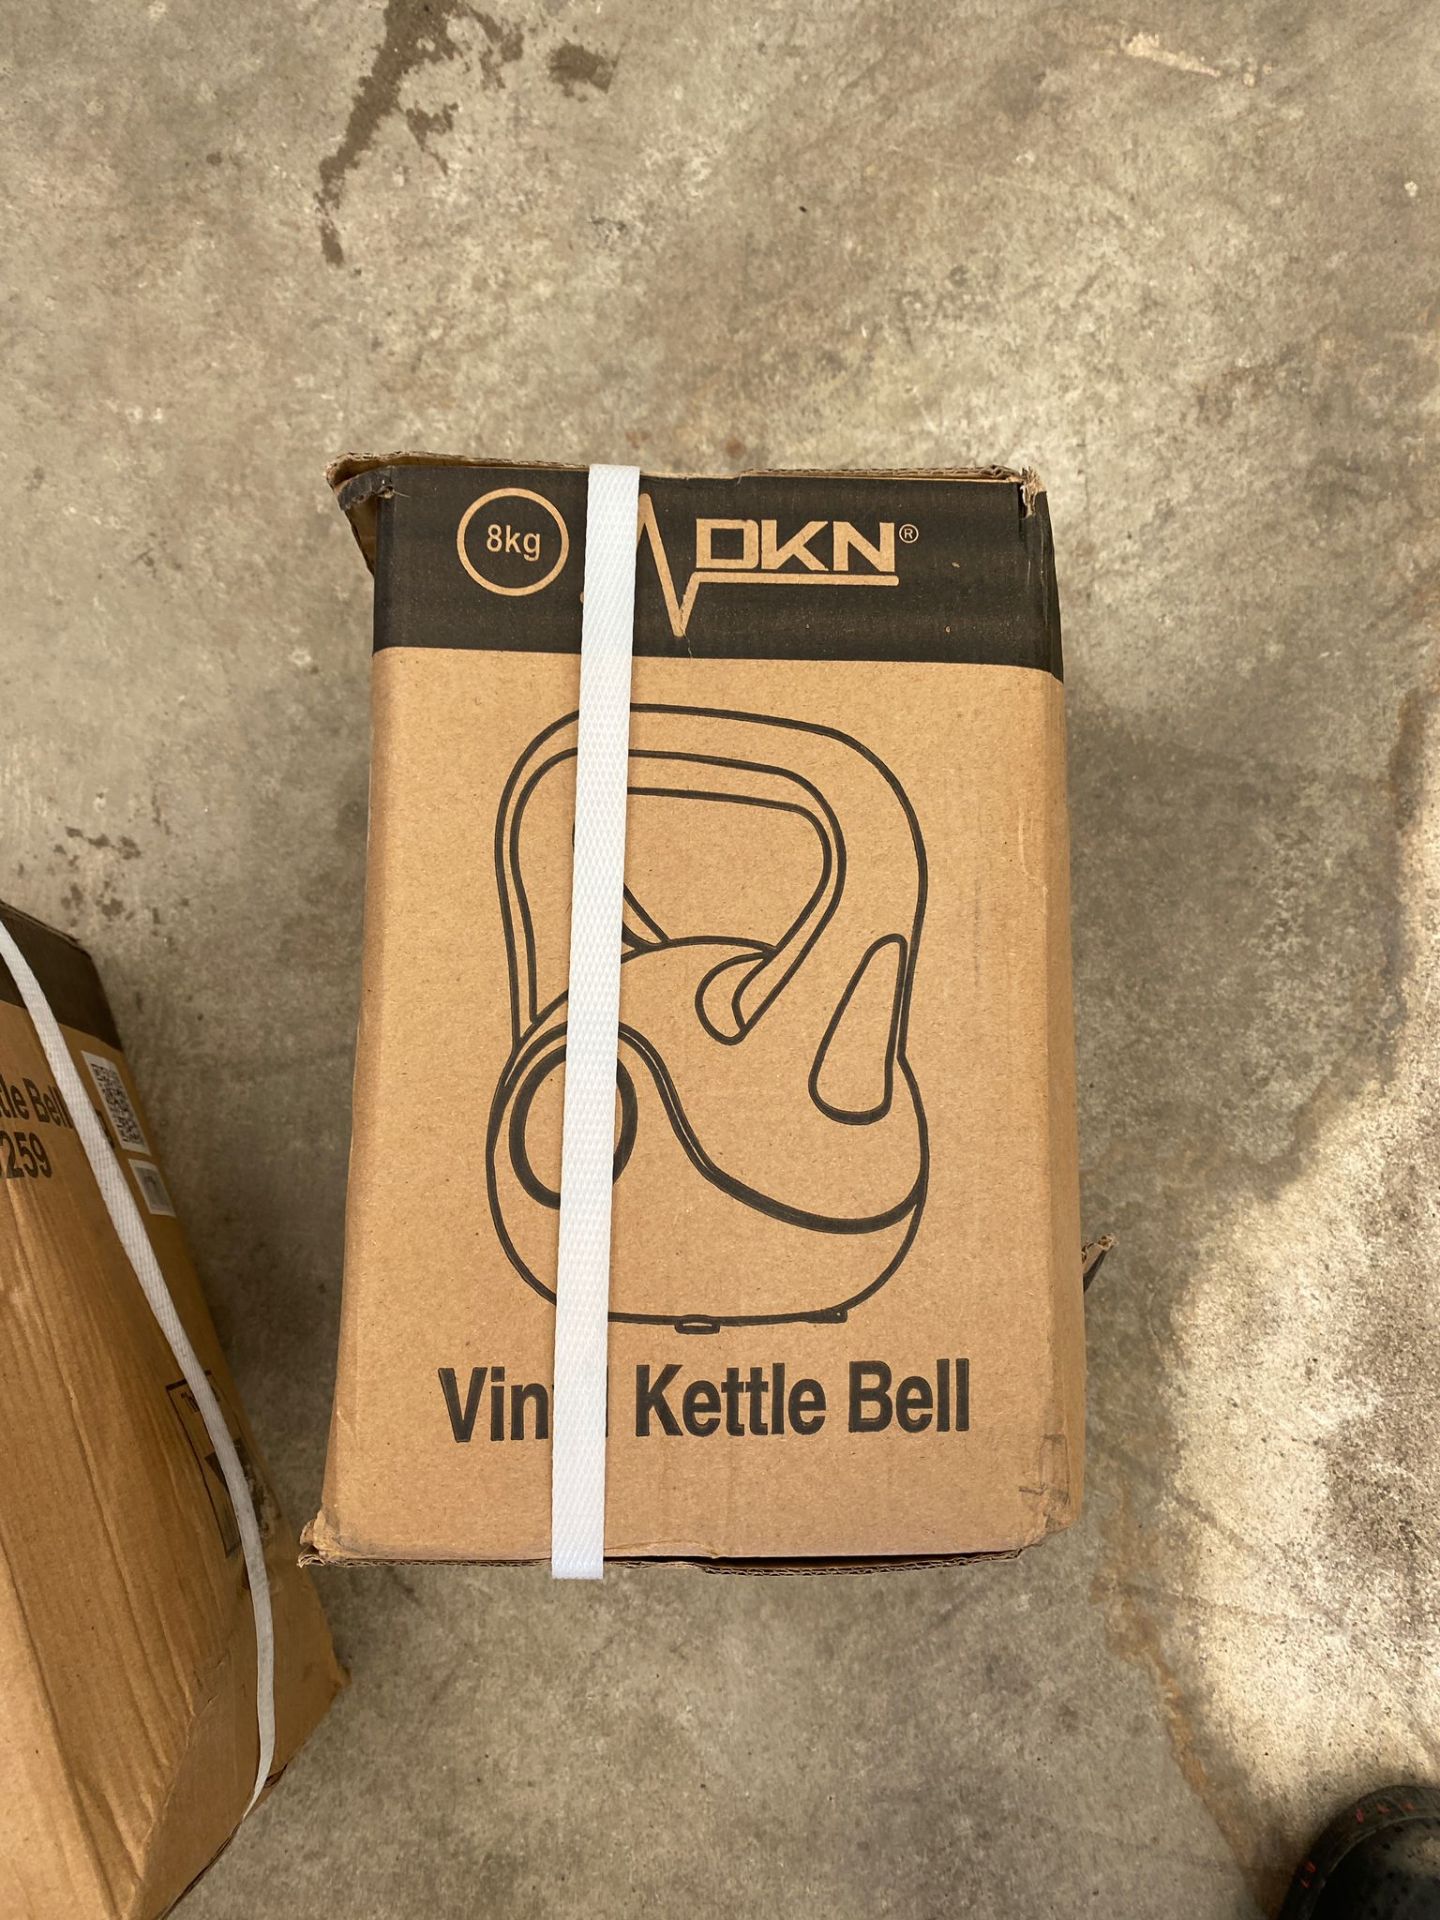 DKN 8kg vinyl kettlebell *PLUS VAT*